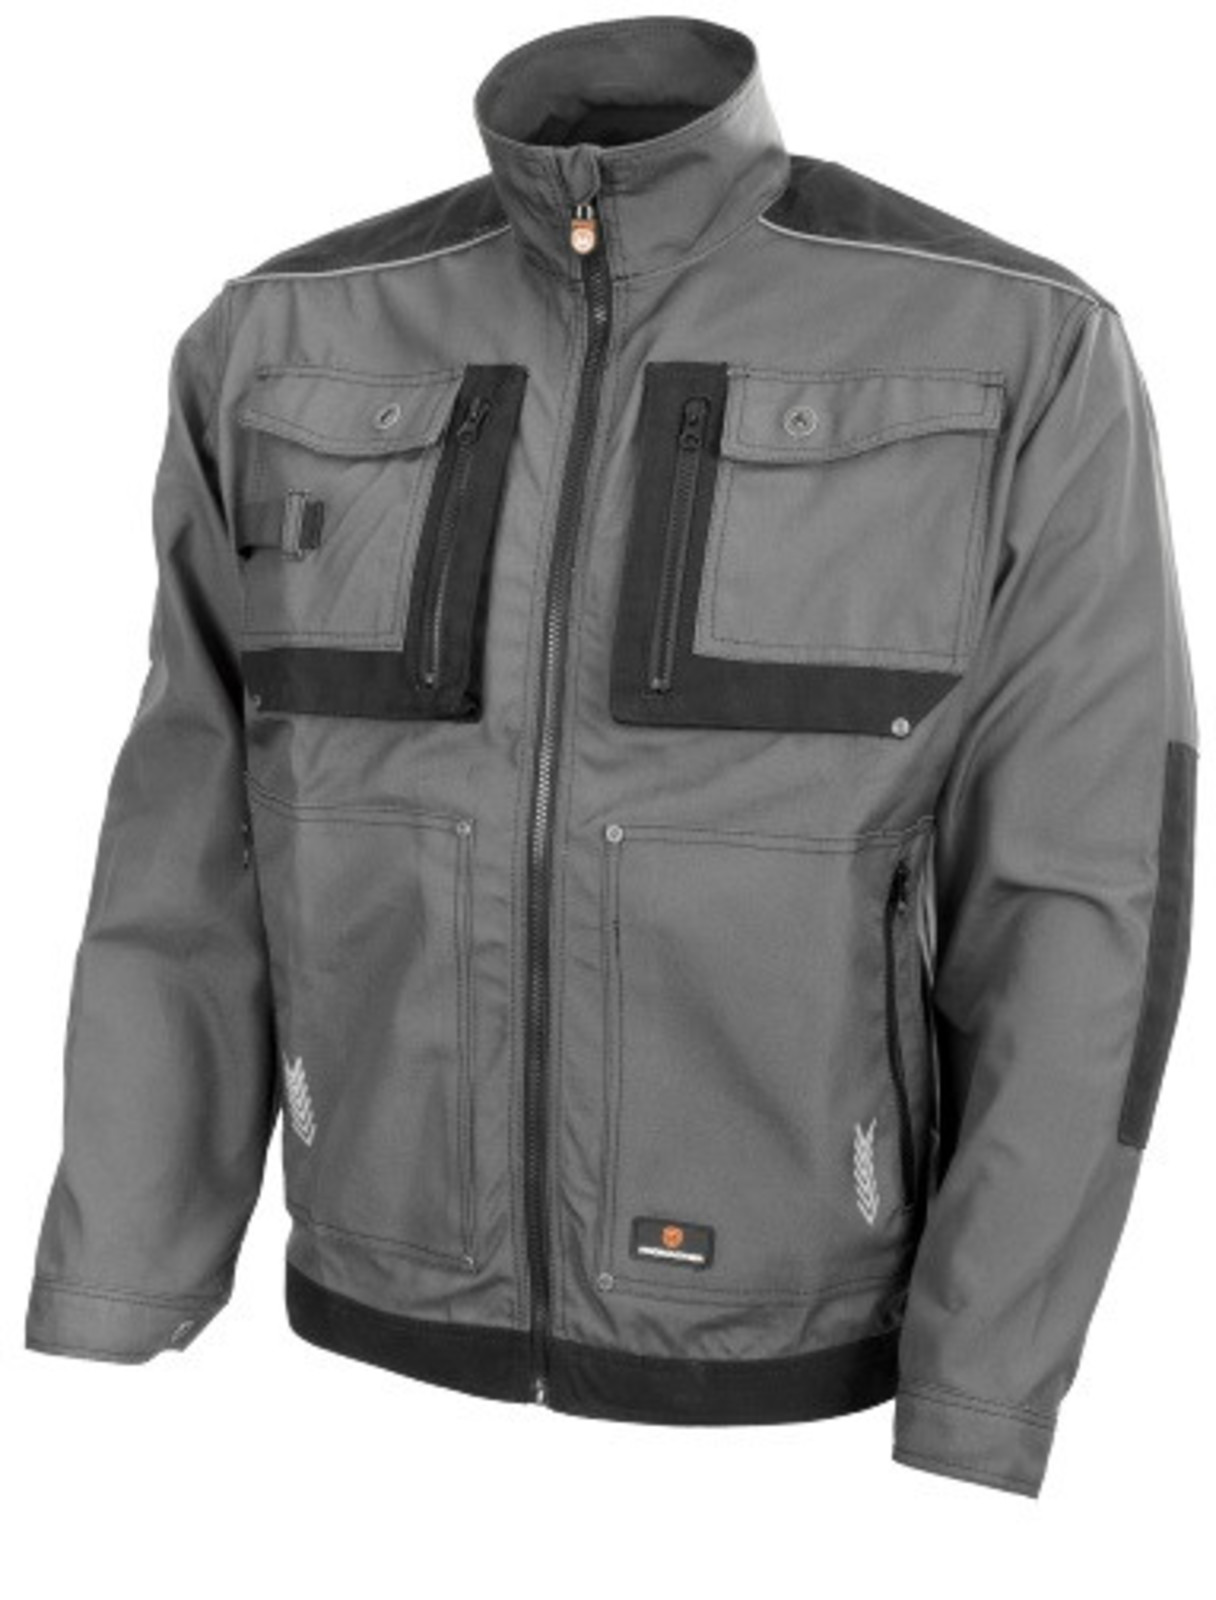 Odolná monterková bunda ProMacher Myron - veľkosť: 48-50, farba: tmavo šedá